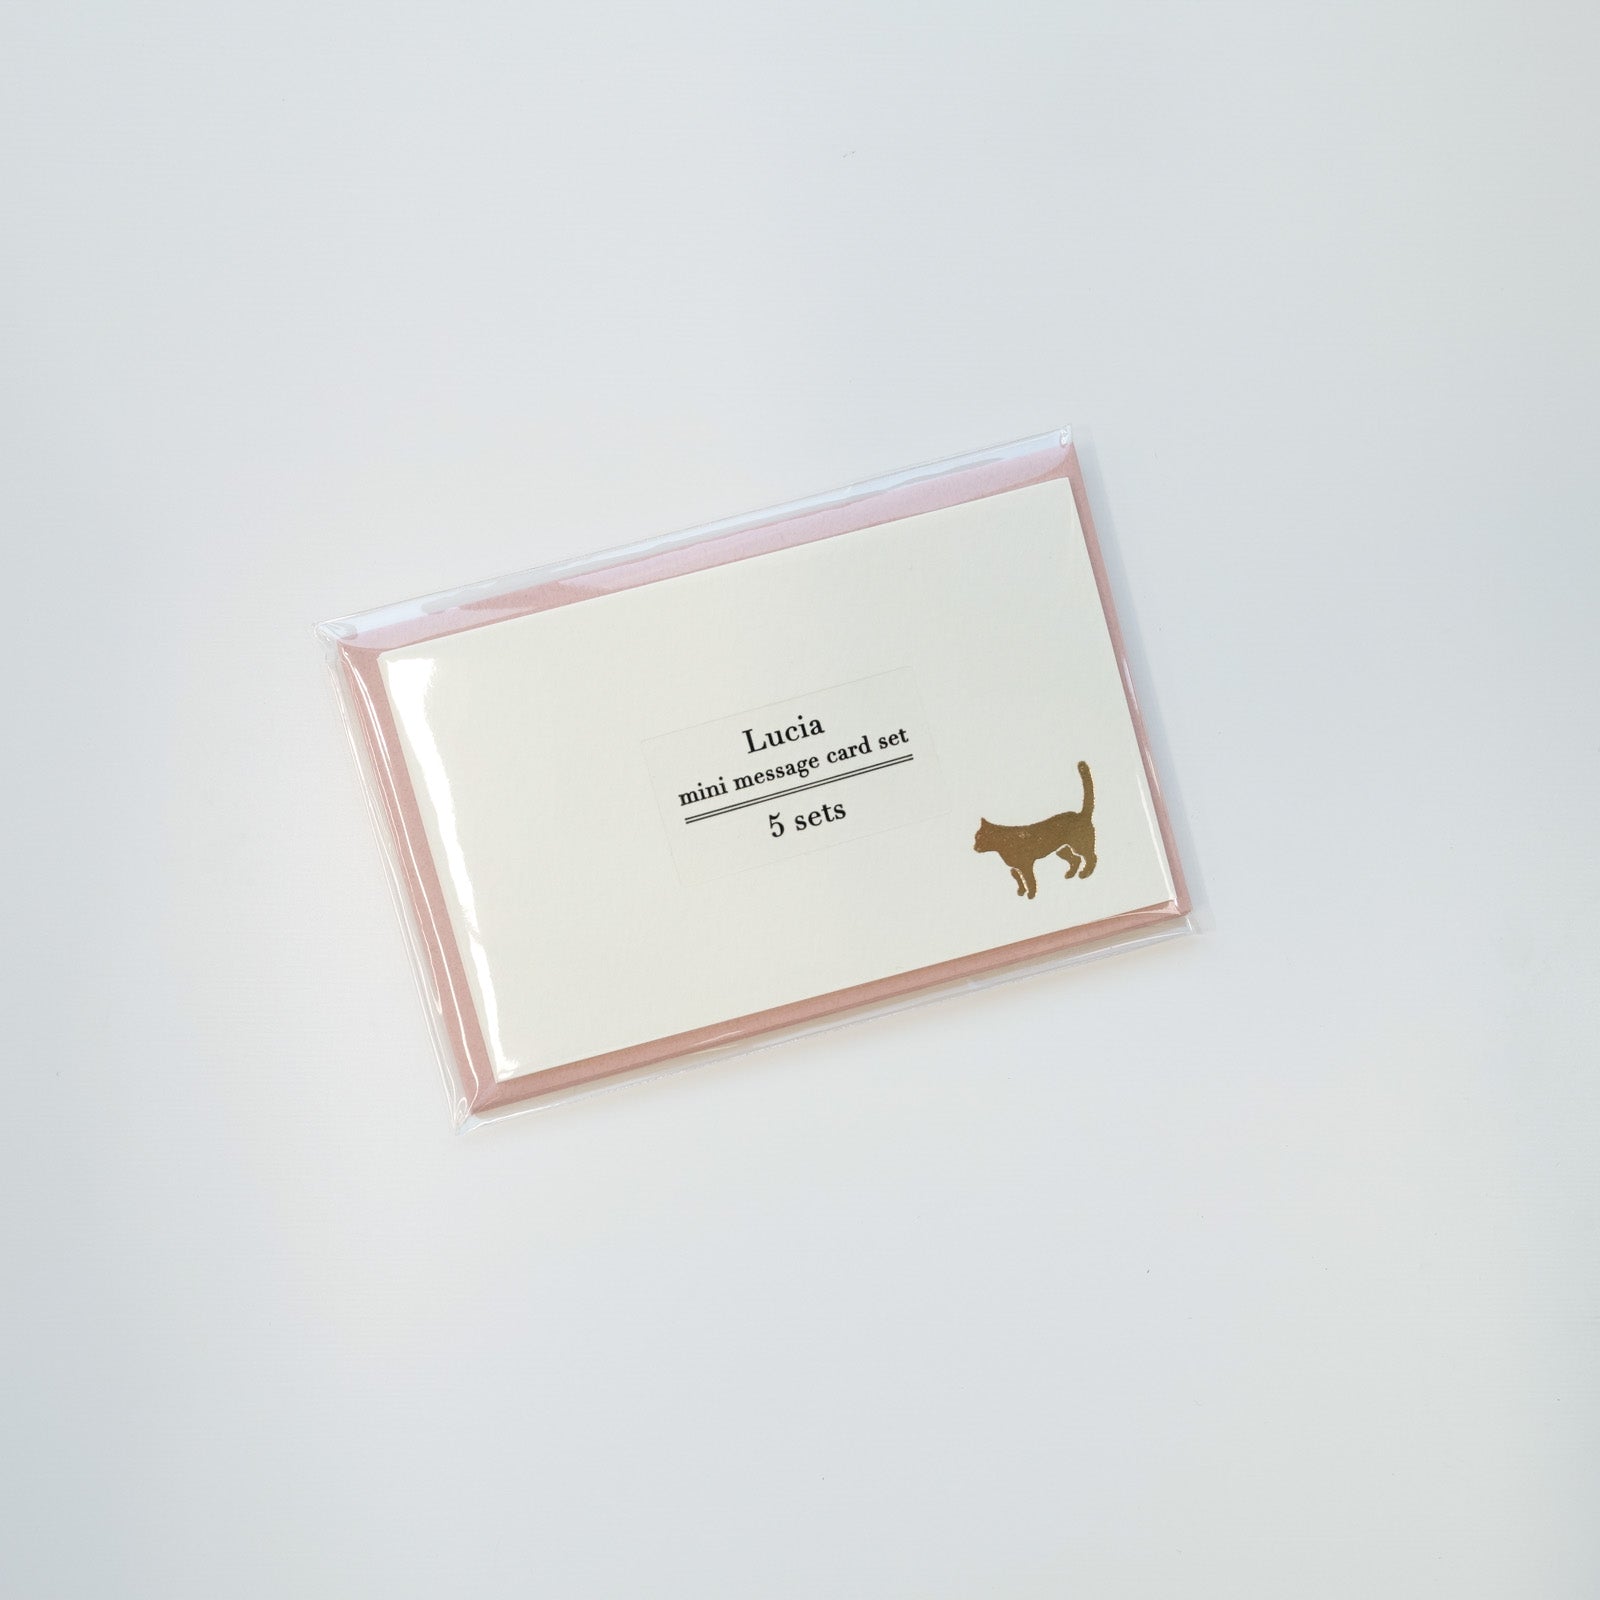 cat mini message card set envelopes gold foil